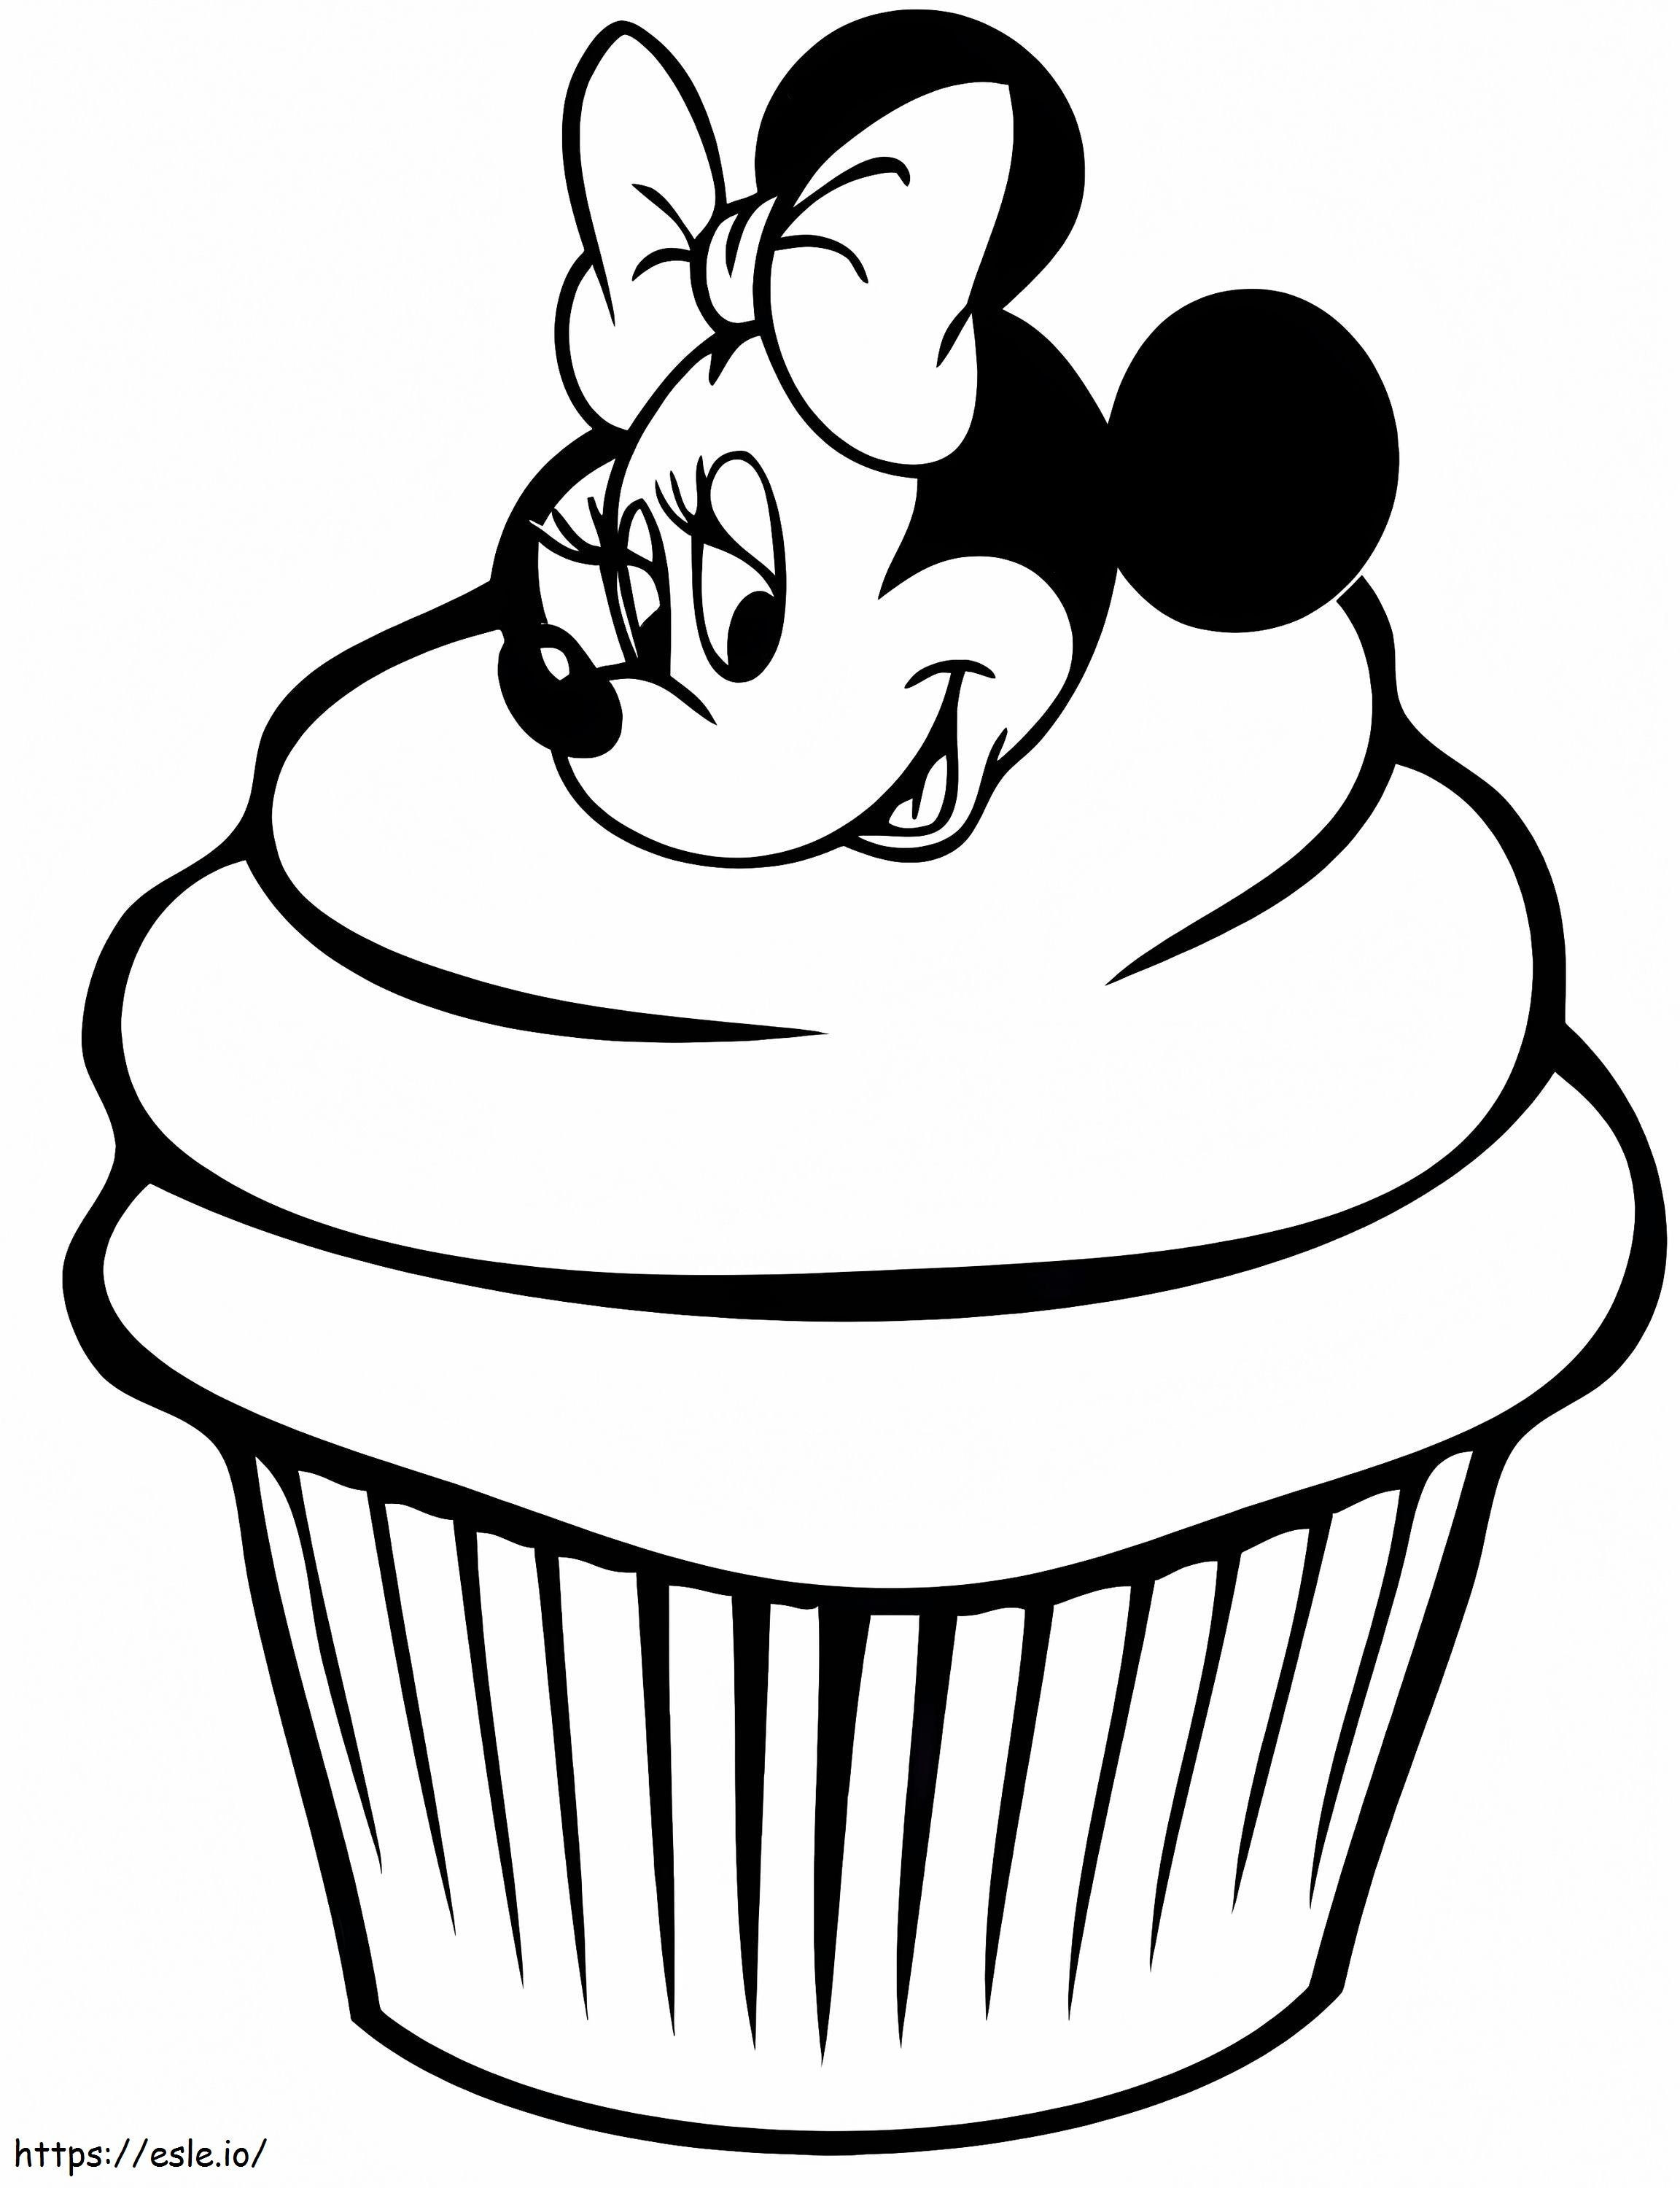 Cupcake Minnie Mouse kleurplaat kleurplaat